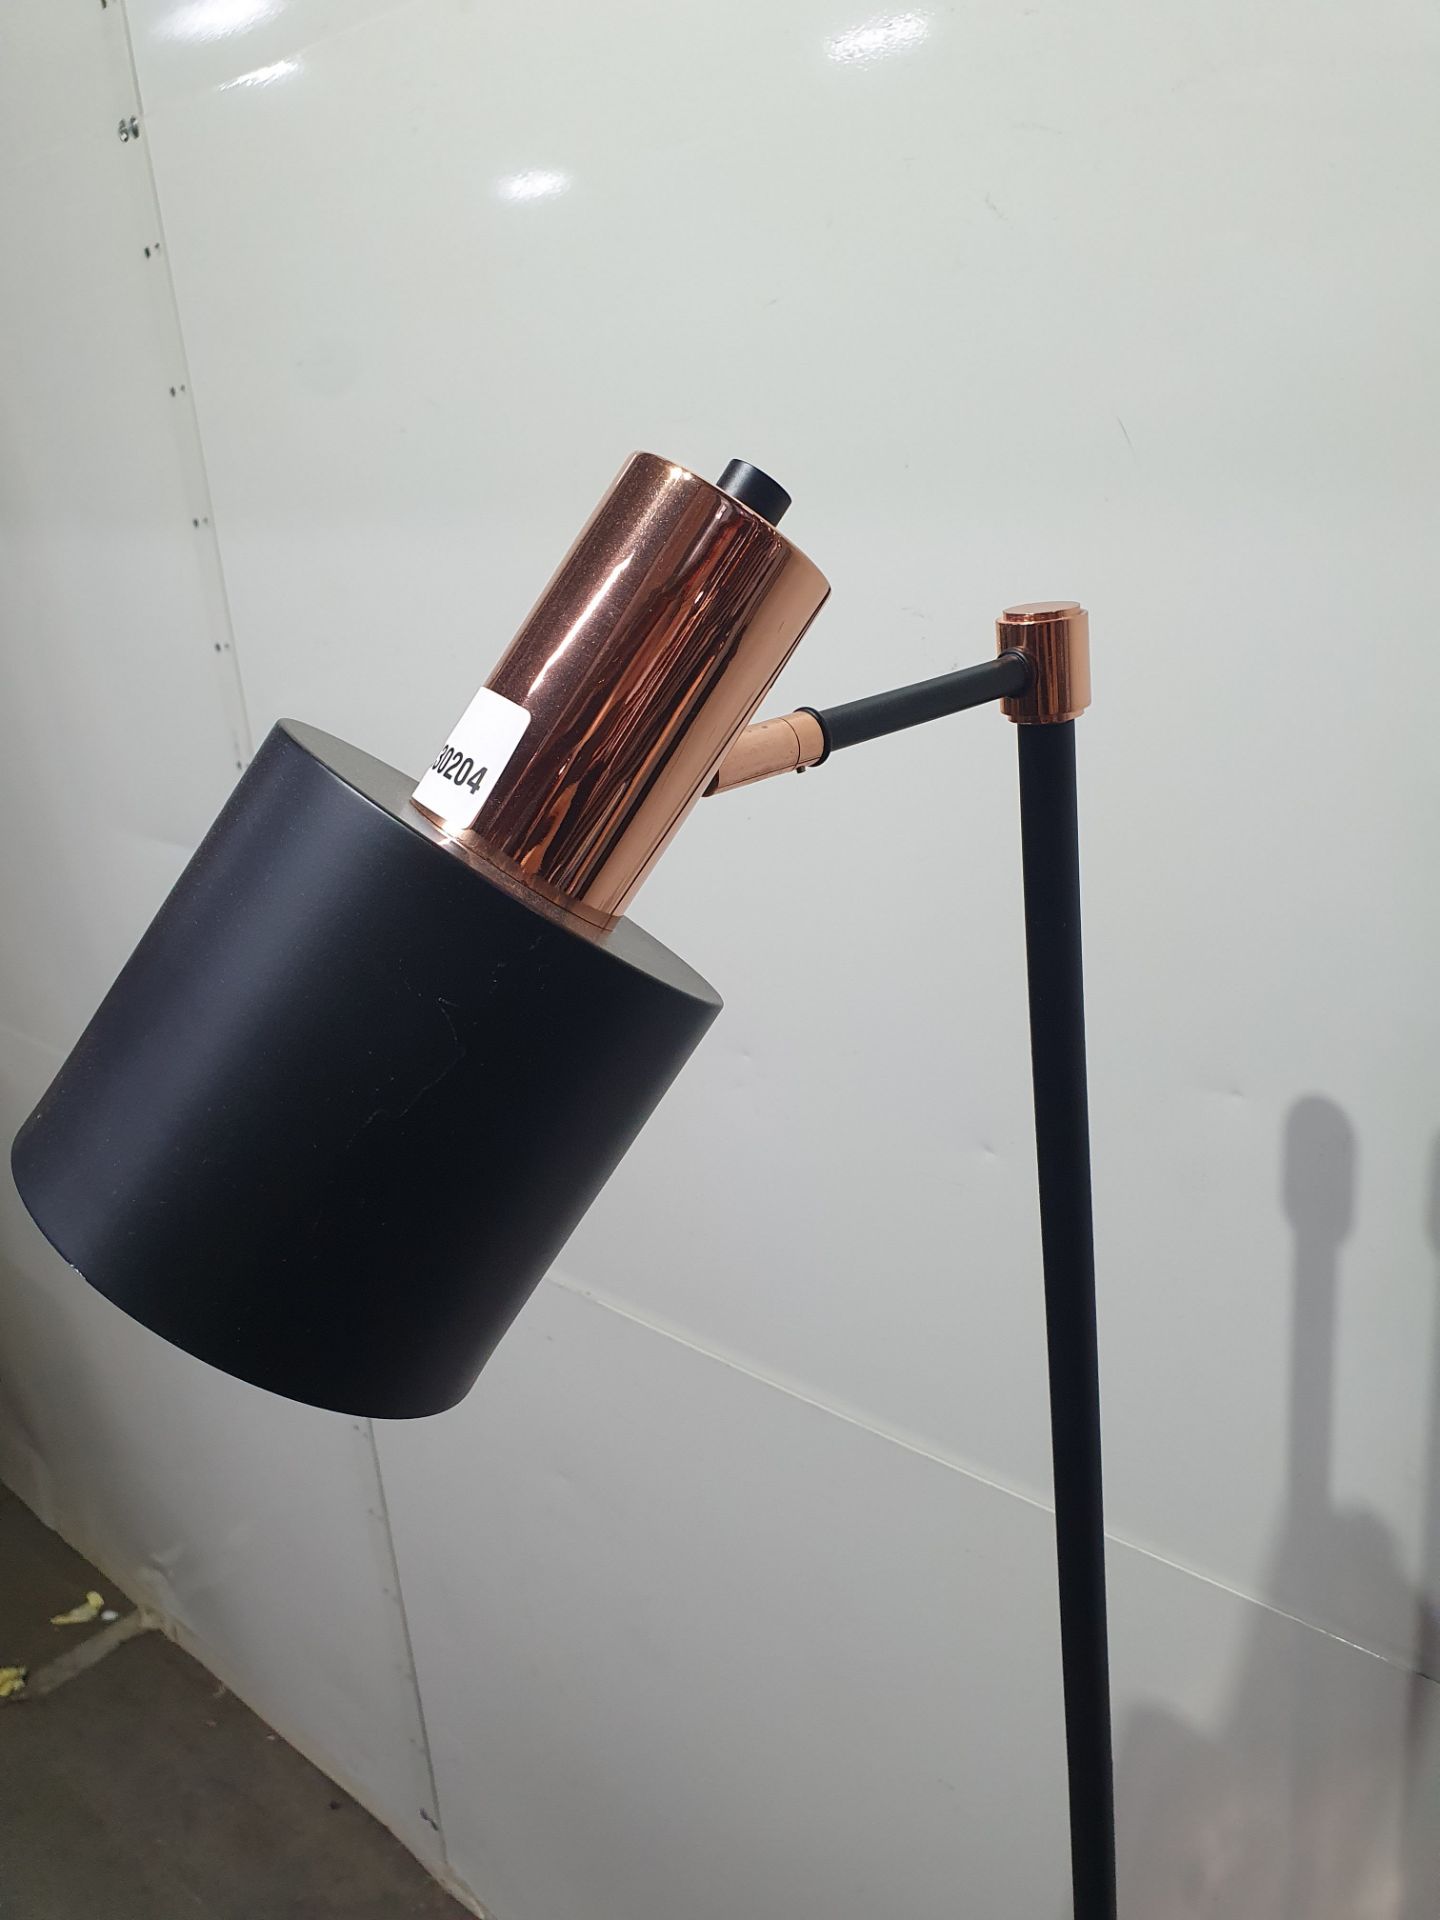 Black/Bronze Metal Floor Lamp with Foot Switch - Image 5 of 7